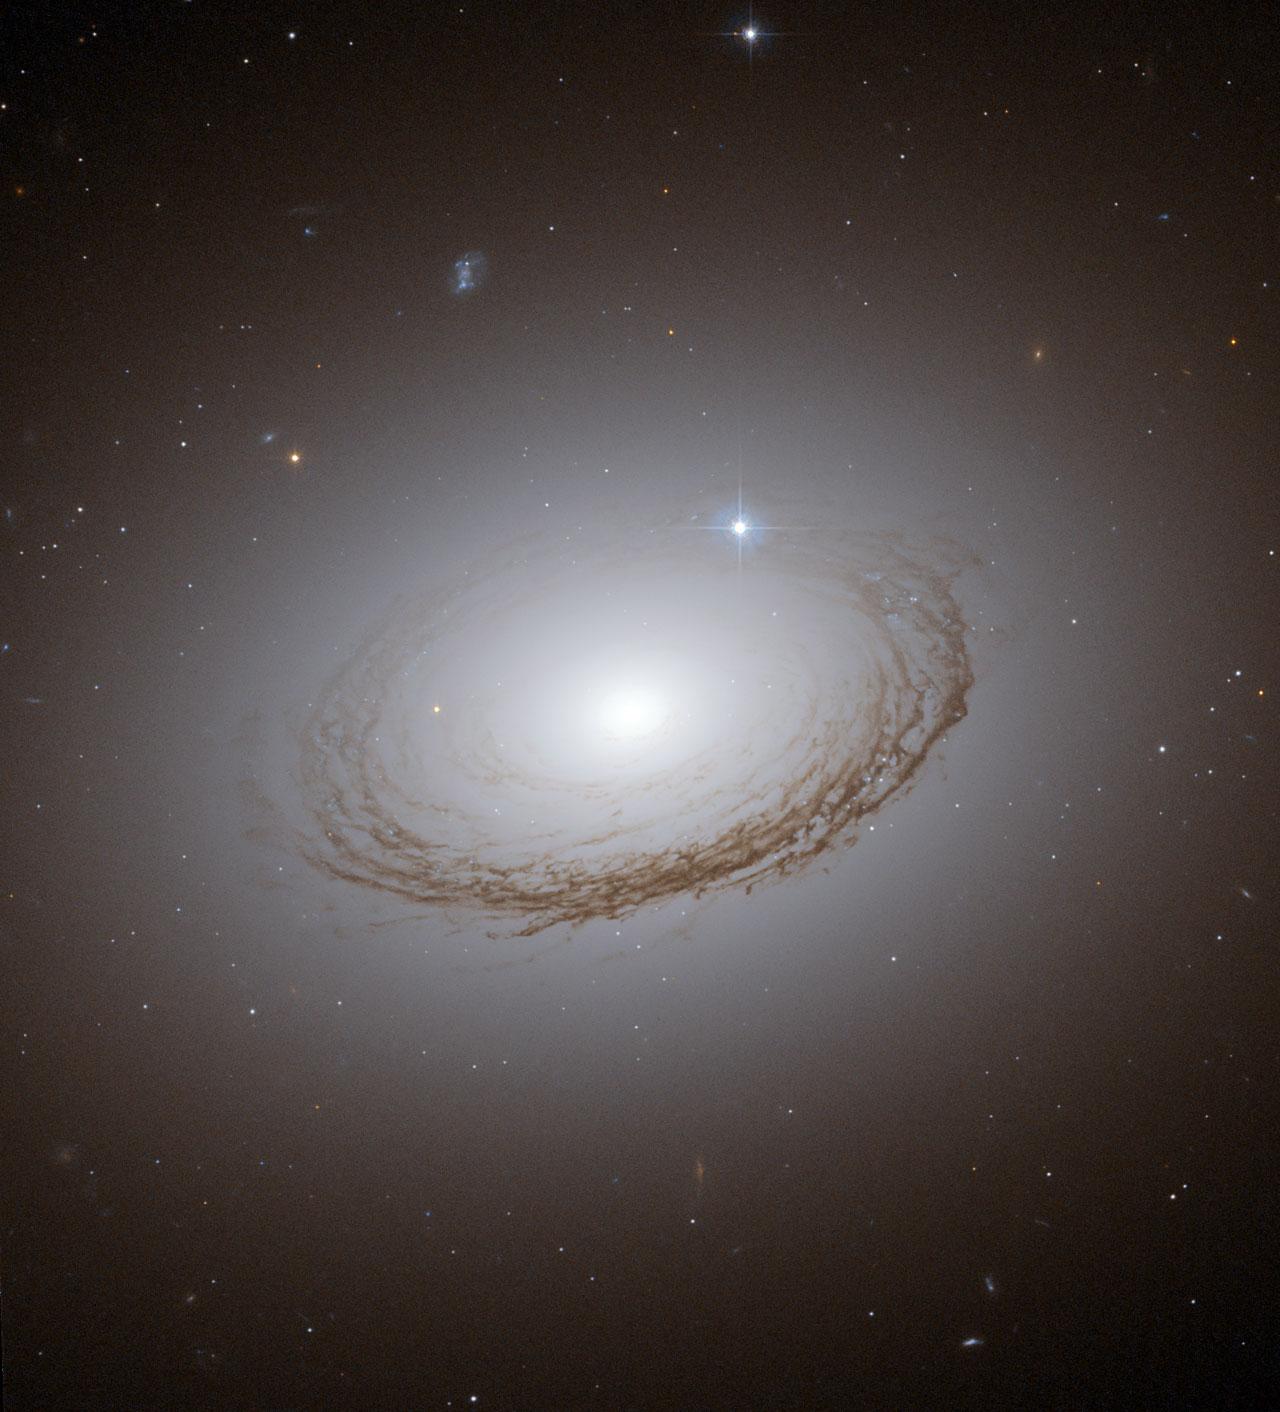 La grande galaxie spirale elliptique NGC 7049